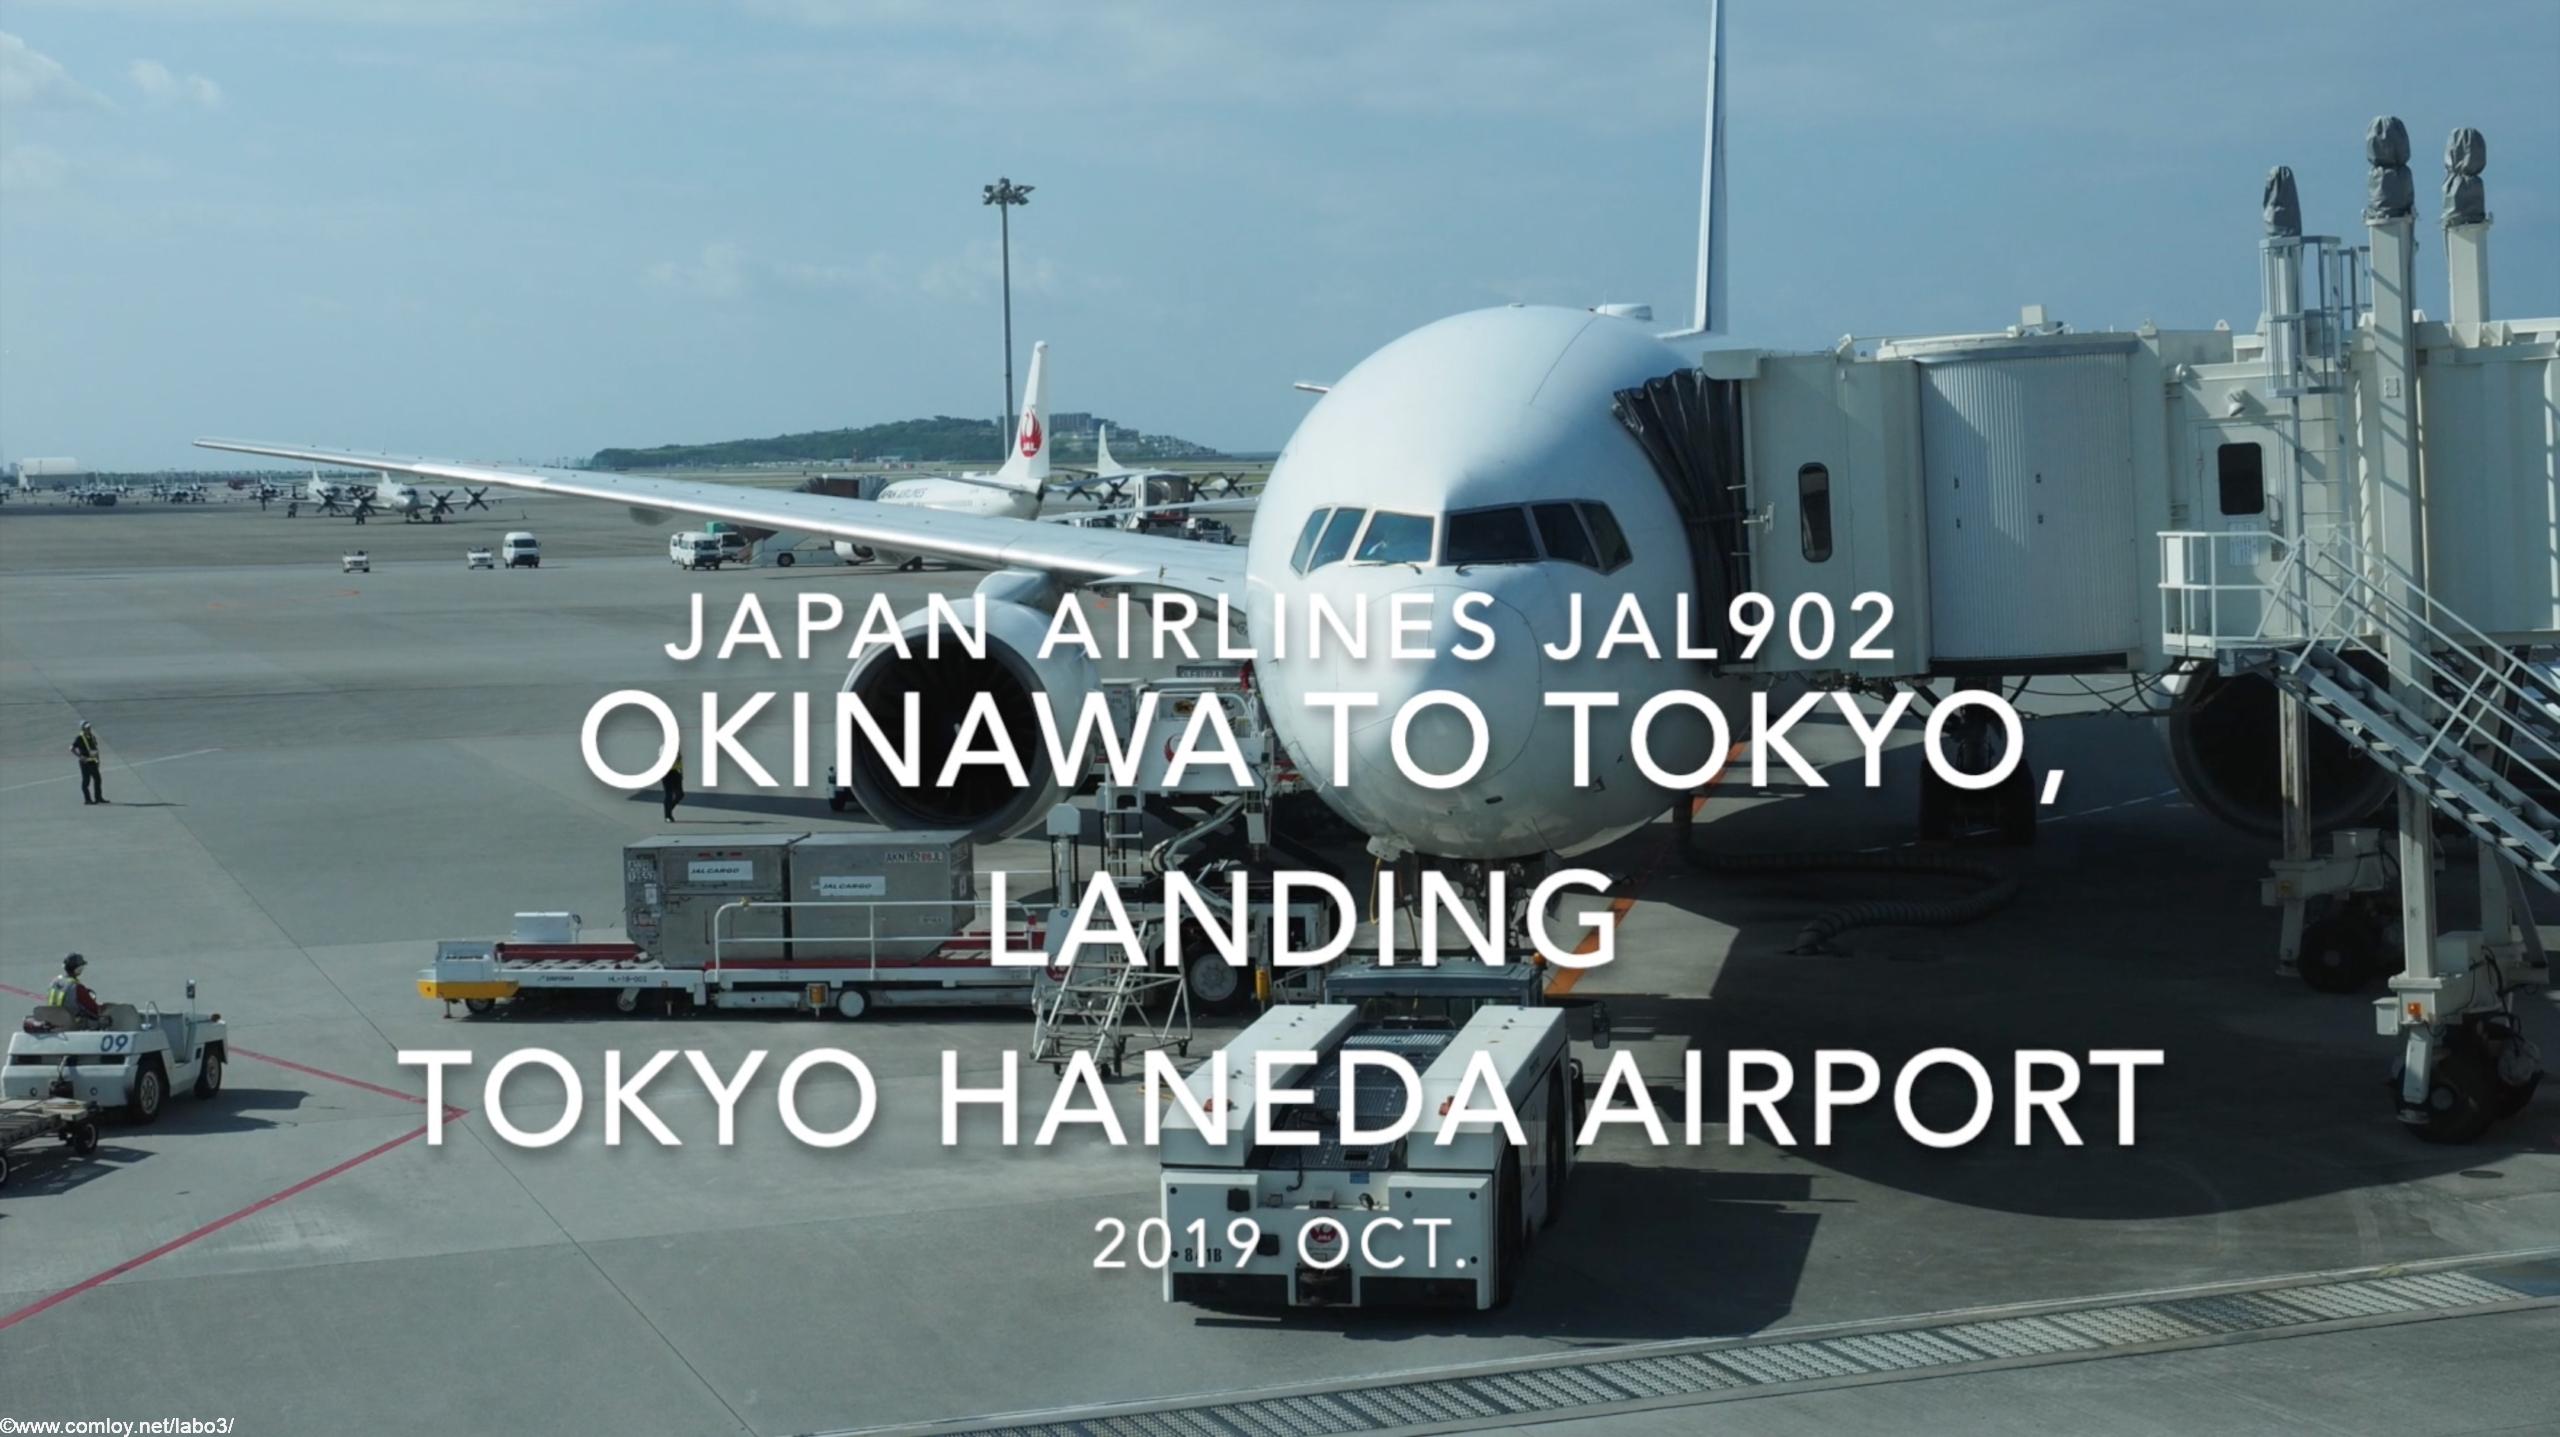 【機内から離着陸映像】2019 Oct Japan airlines JAL902 OKINAWA NAHA to TOKYO HANEDA, Landing TOKYO HANEDA Airport